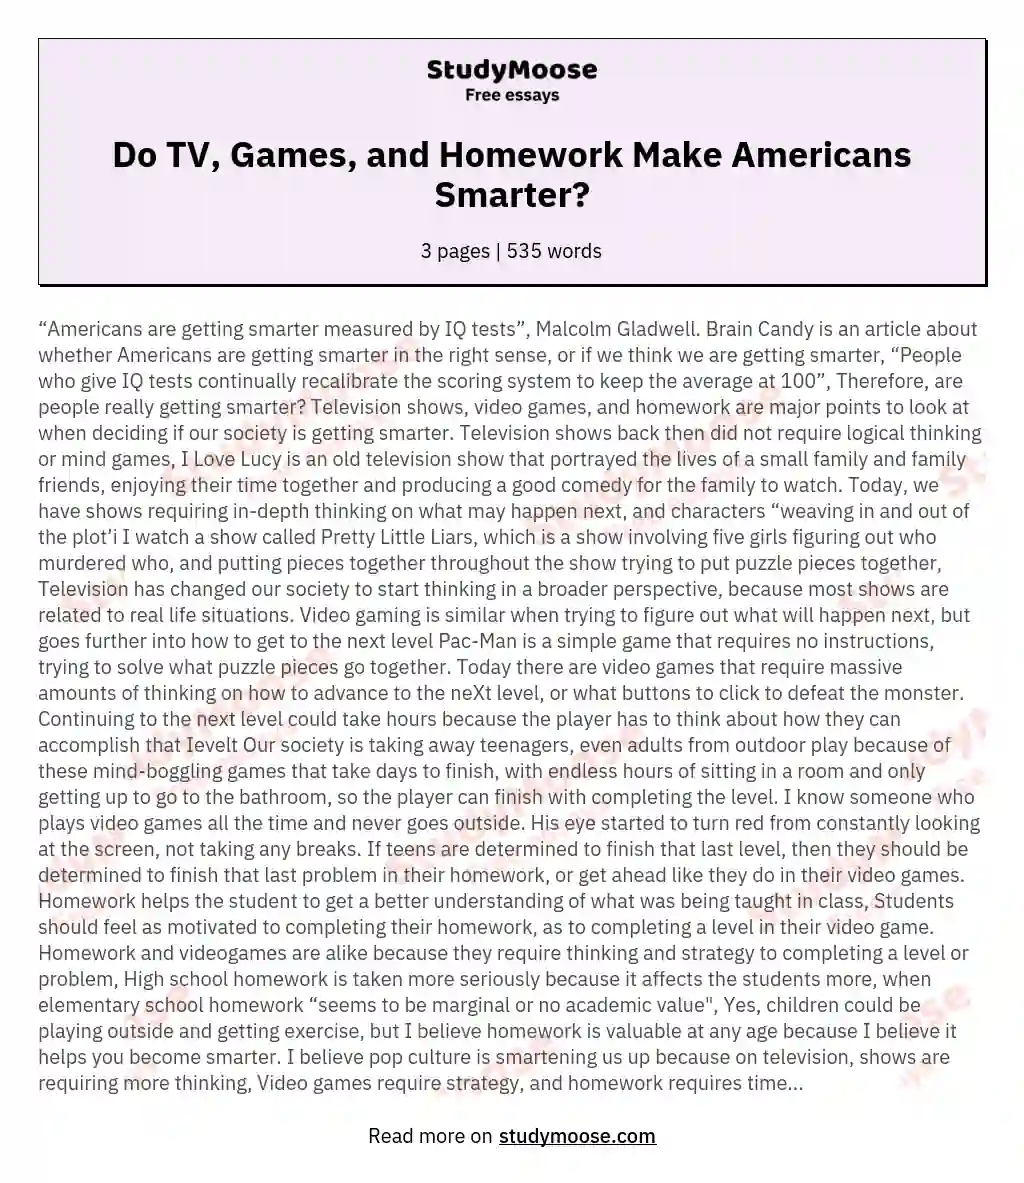 Do TV, Games, and Homework Make Americans Smarter? essay